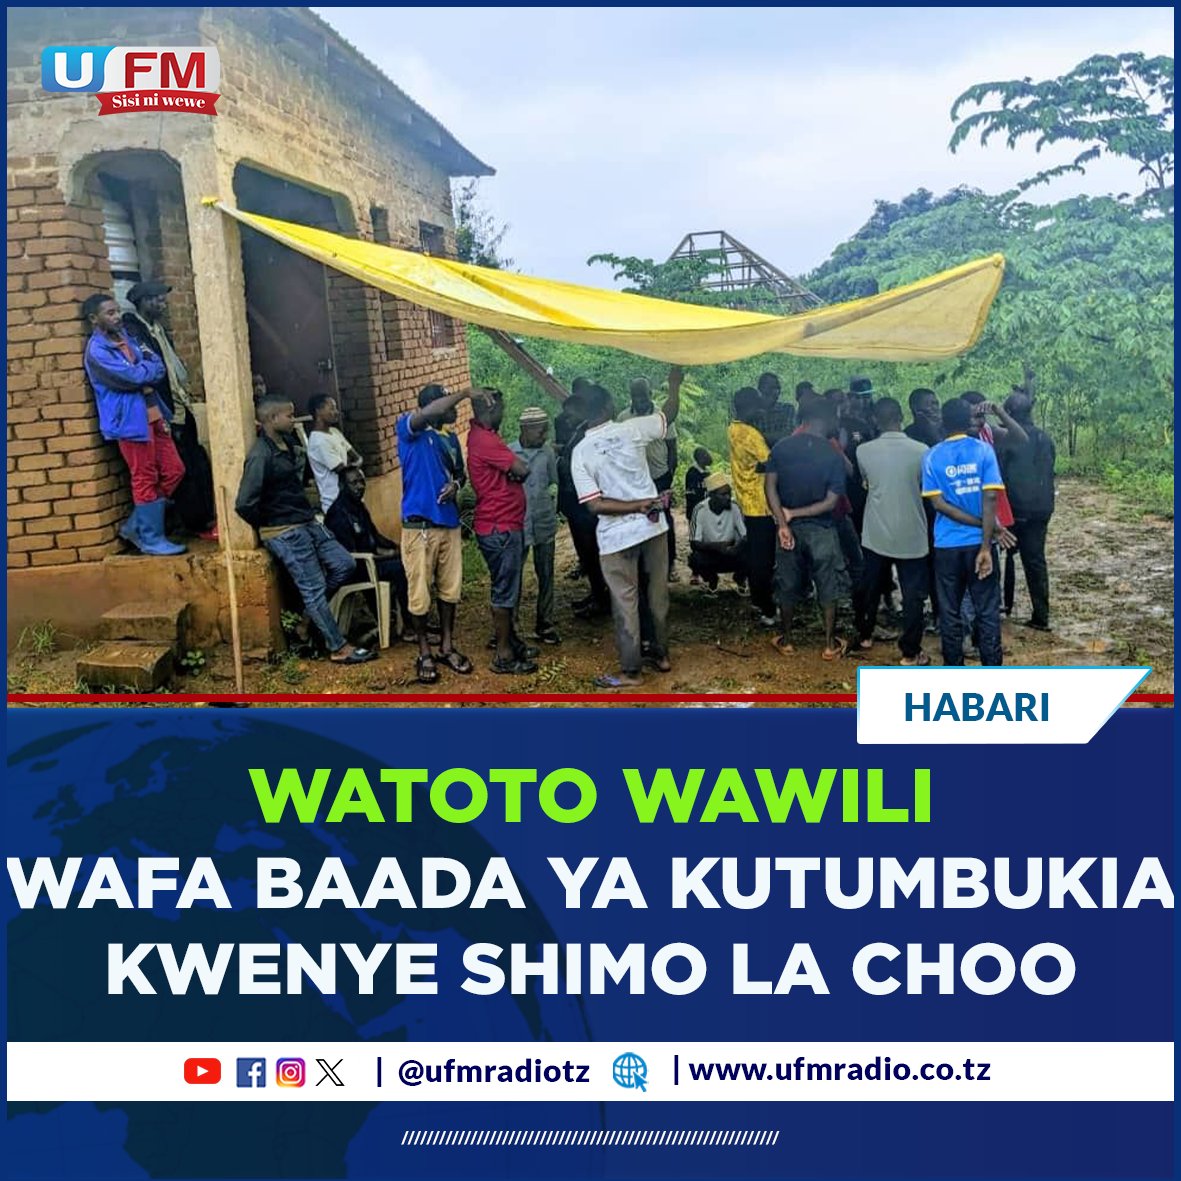 Watoto wawili wa familia moja kutoka Kata ya Mindu mkoani Morogoro, wenye umri wa miaka 11 na 12 wamekufa baada ya kutumbukia kwenye shimo la choo lililopo jirani na nyumba waliyokuwa wakiishi.

#UFMUpdates